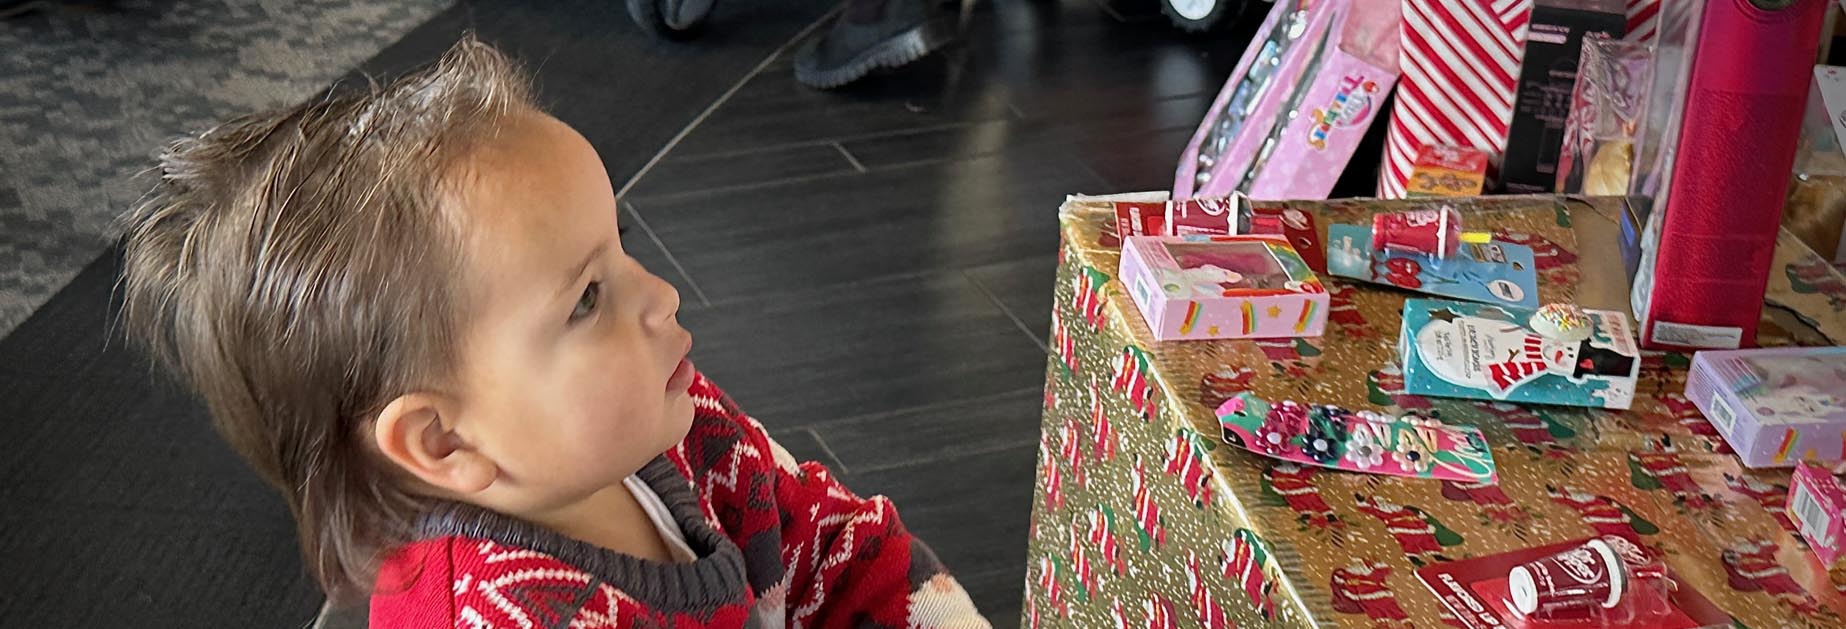 Ein kleines Kind neben verpackten Geschenken